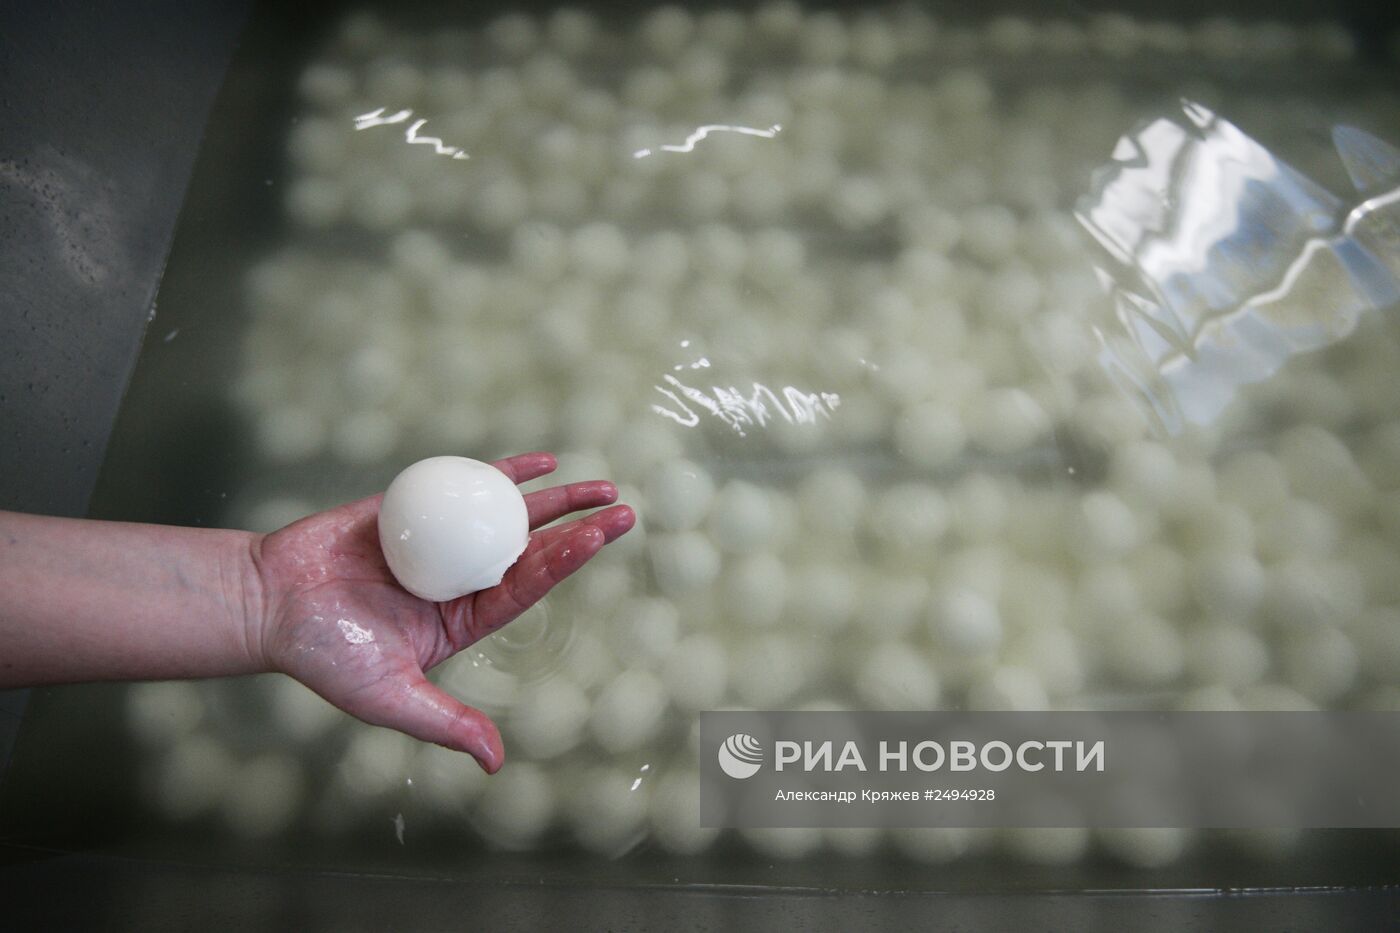 Производство сыра моцарелла на "Фабрике Фаворит" в Новосибирской области